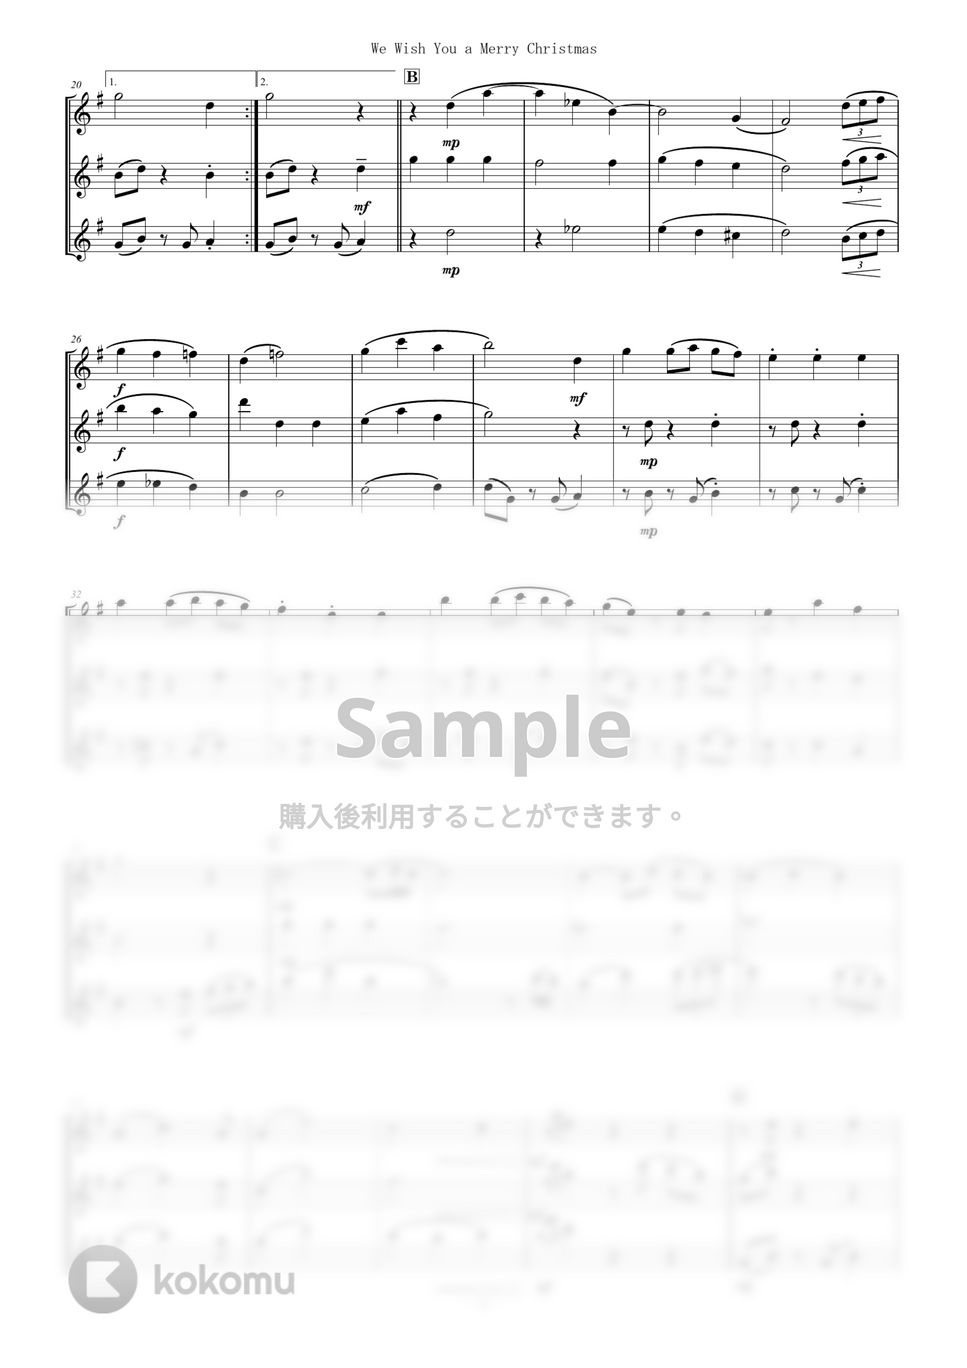 イギリス民謡 - フルート三重奏 / We Wish You a Merry Christmas (Flute/Trio/Xmas/Christmas) by Zoe